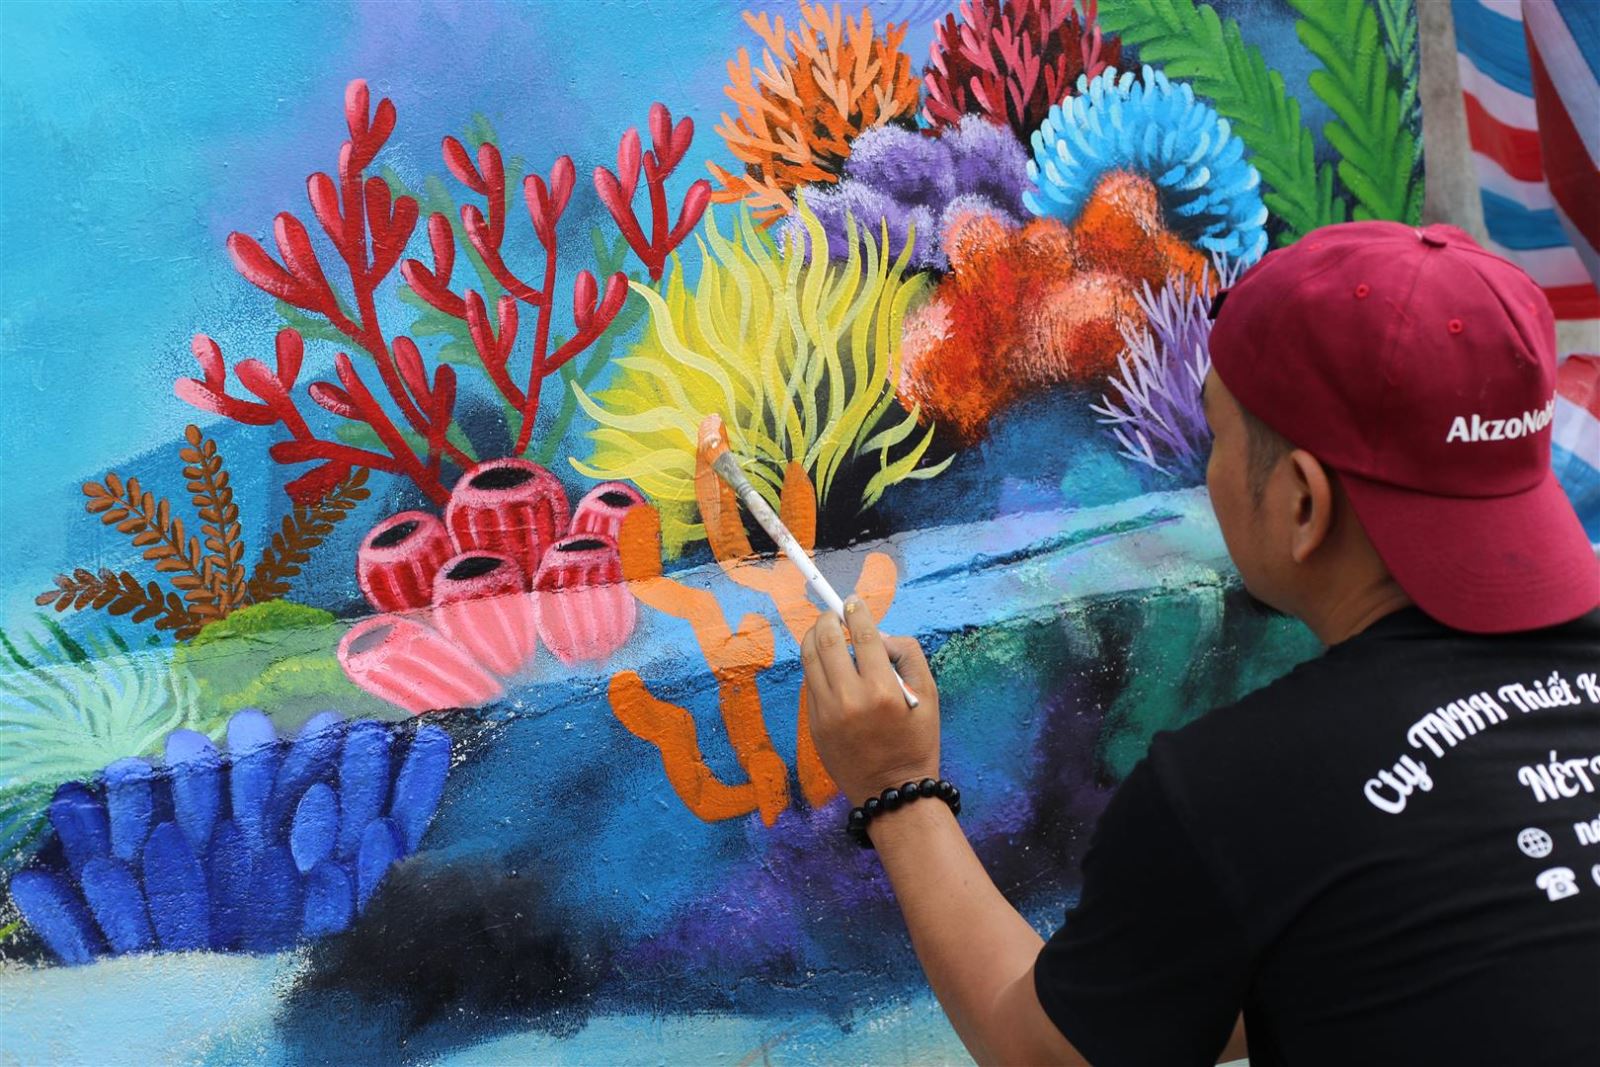 Tranh bích họa - Thưởng thức những bức tranh bích họa về chủ đề san hô đầy màu sắc và sự sống động. Với nét vẽ tinh tế và kỹ thuật hoàn mỹ, những bức tranh này sẽ khiến cho bạn không thể rời mắt khỏi chúng và bị cuốn hút vào thế giới của các loài vật dưới đại dương.